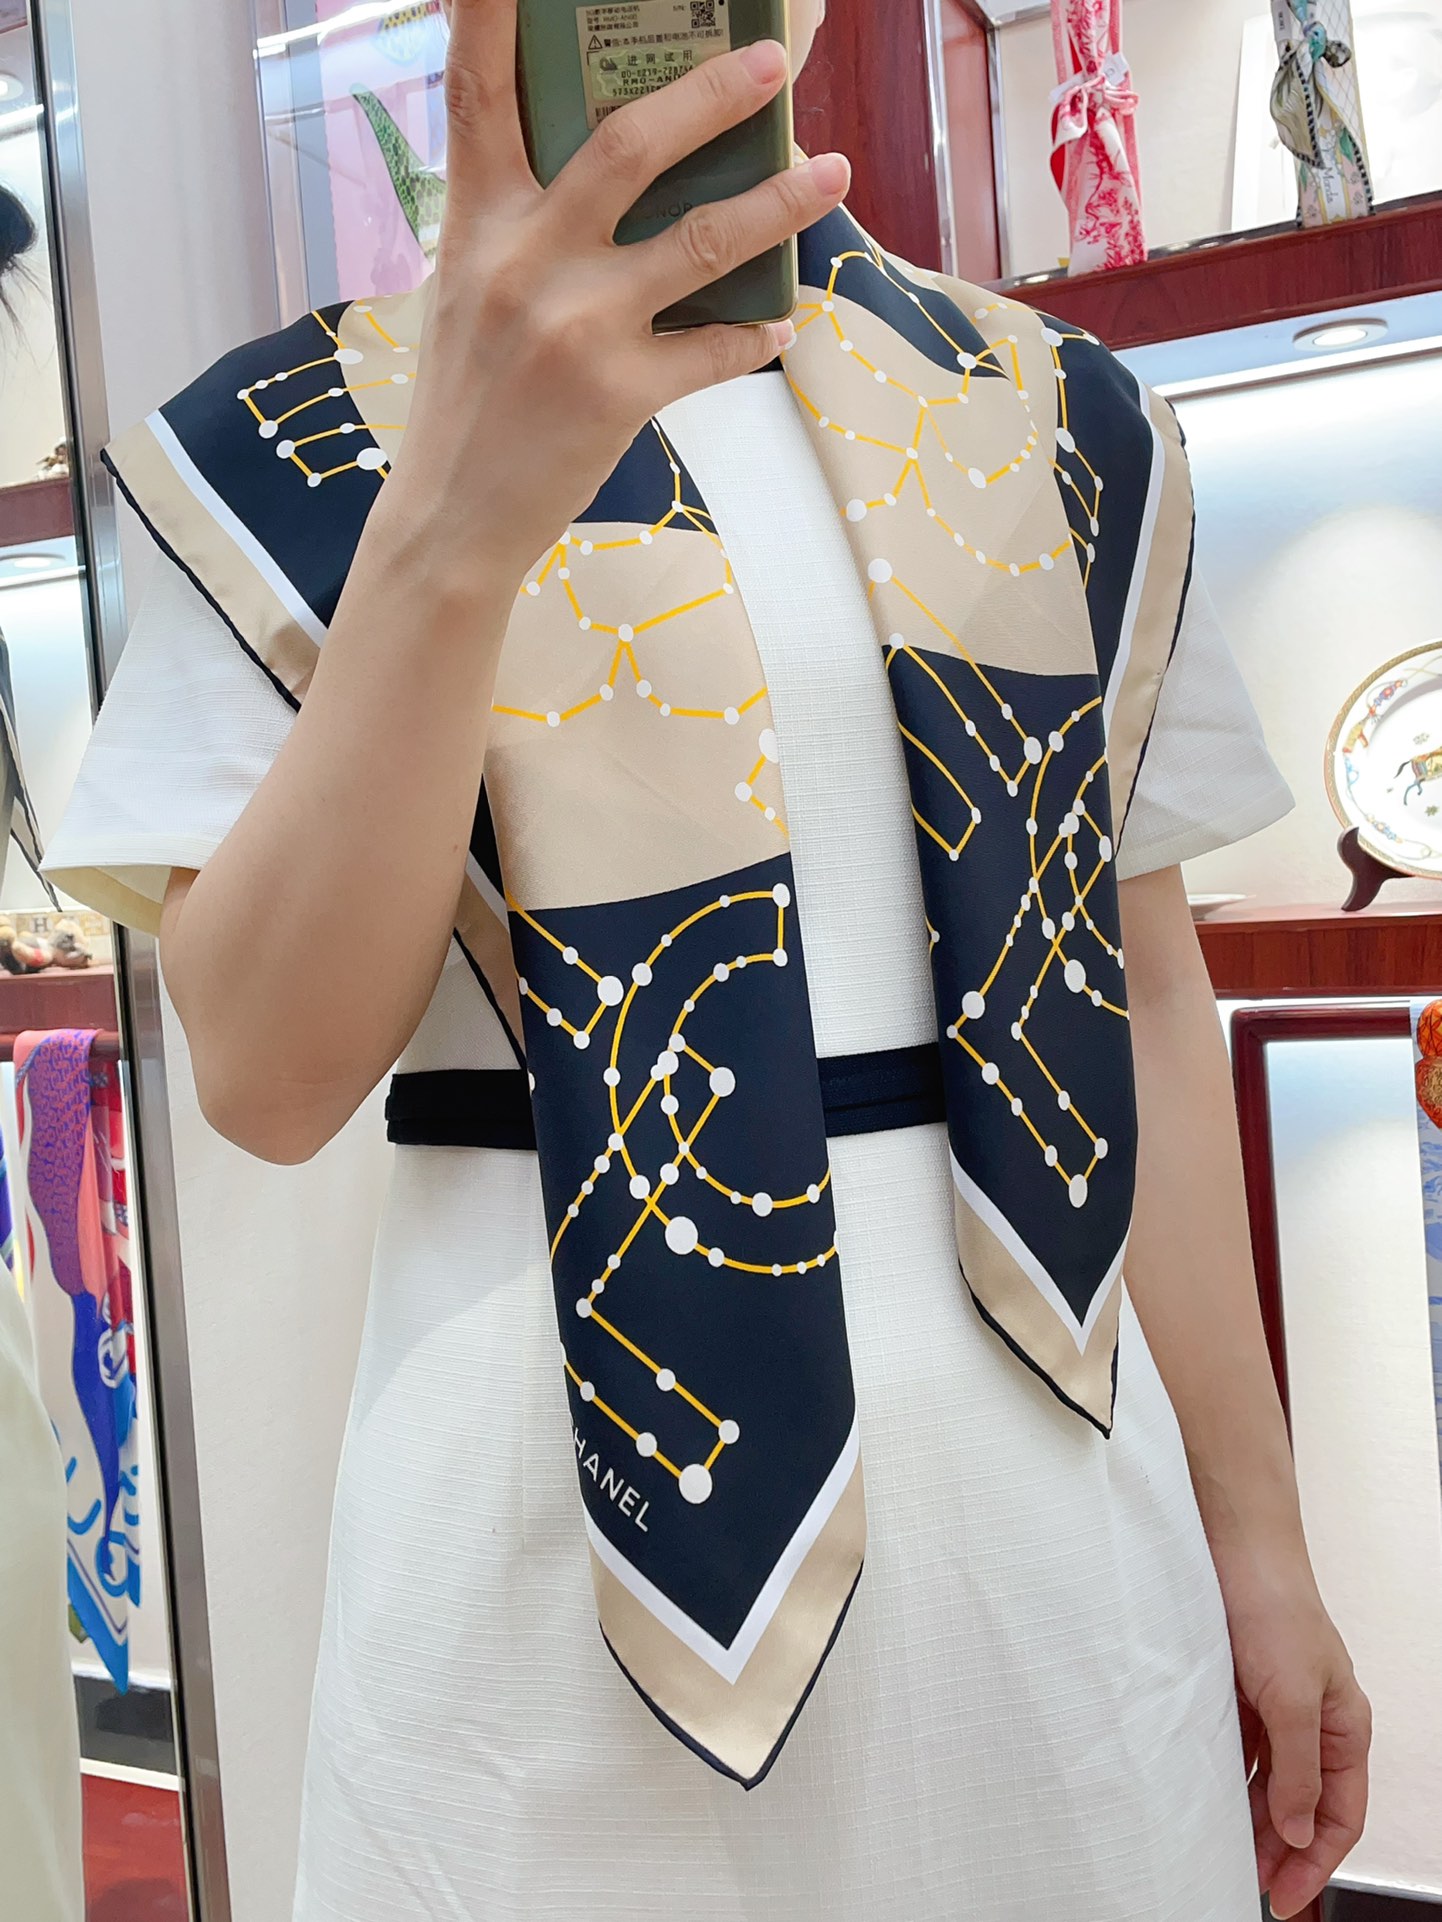 シャネルスカーフ激安通販 シルク 人気定番 美しい ロゴマーク シンプル ファッション レディース ブラウン_1